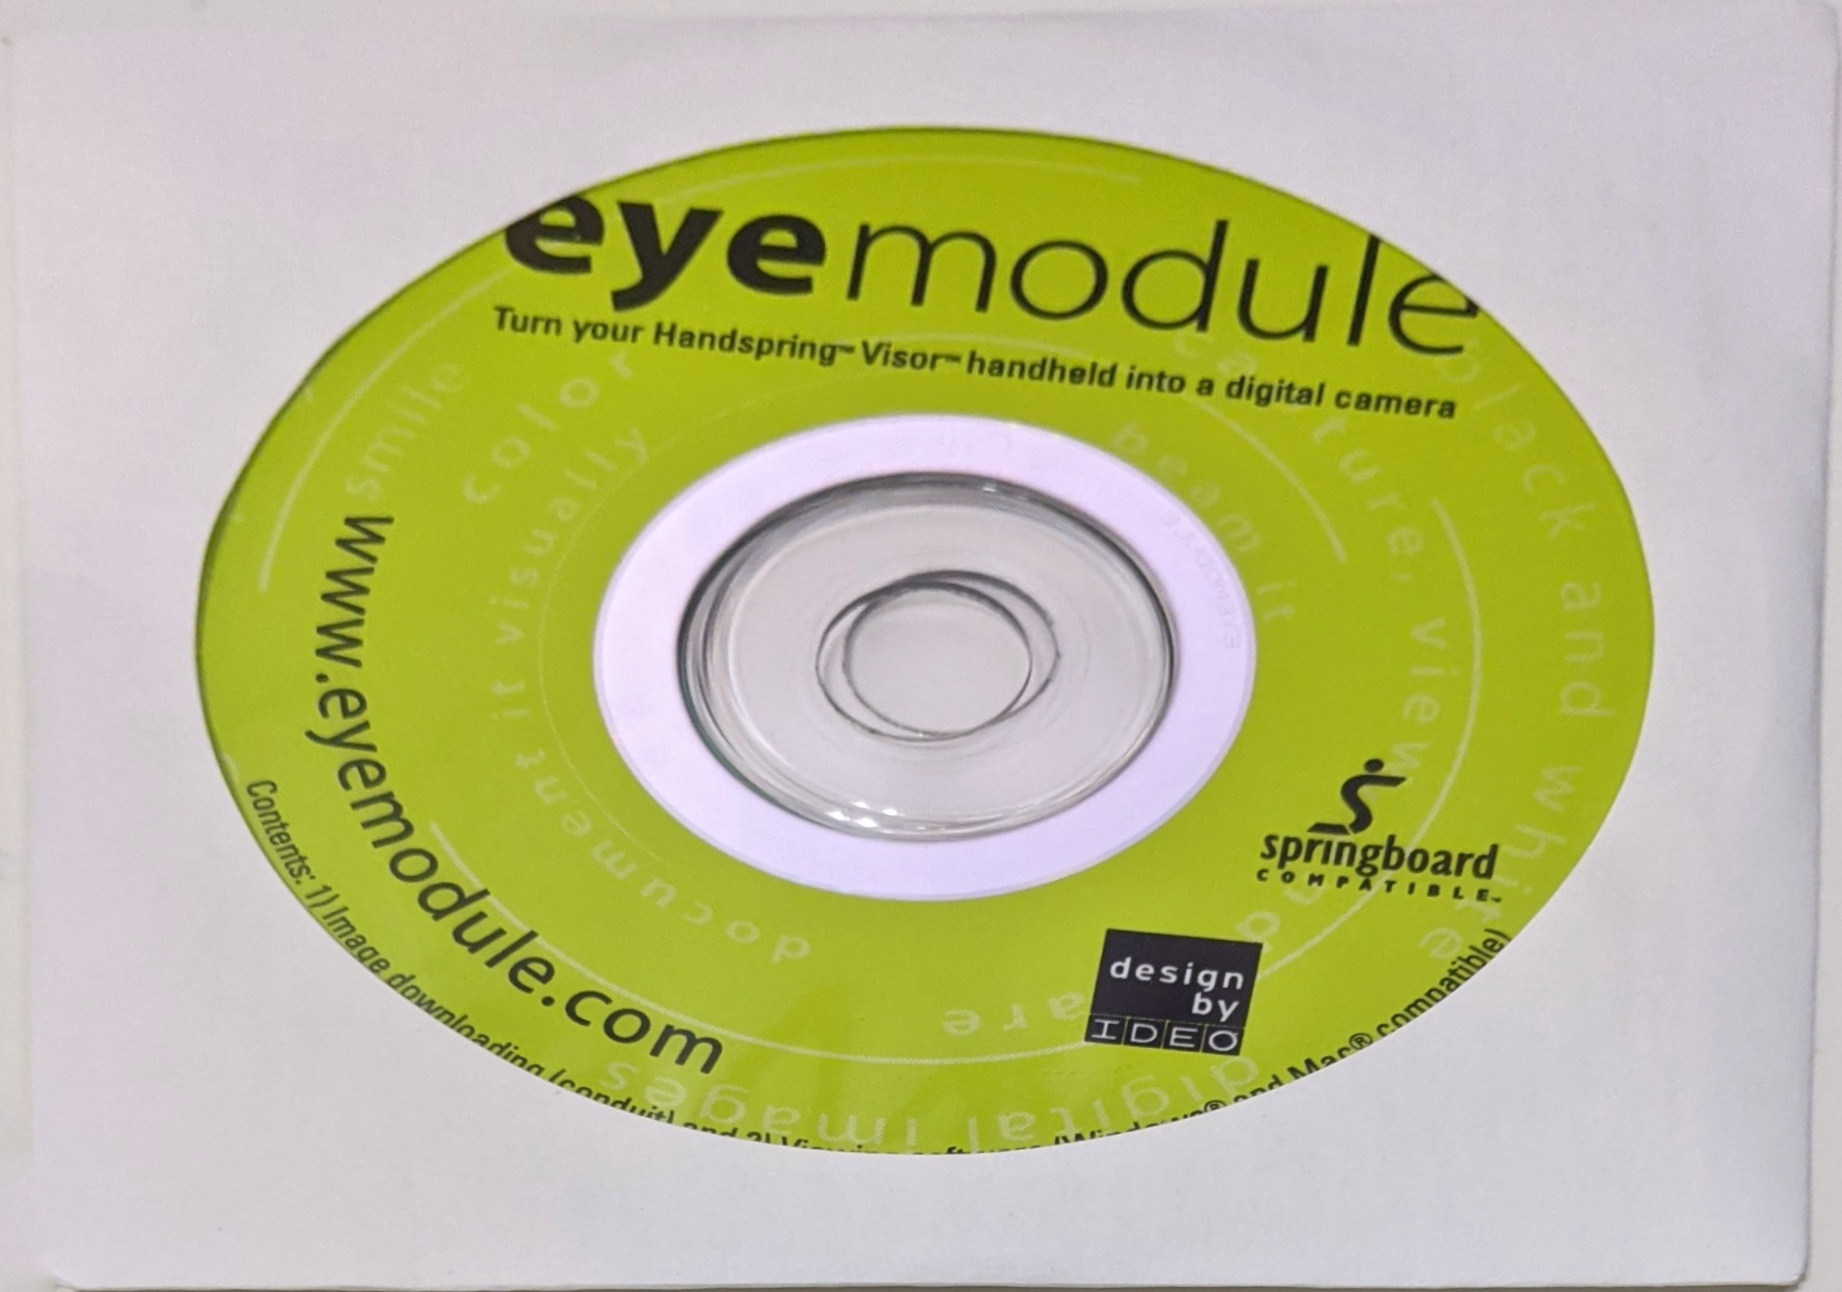 Installation CD for eyemodule